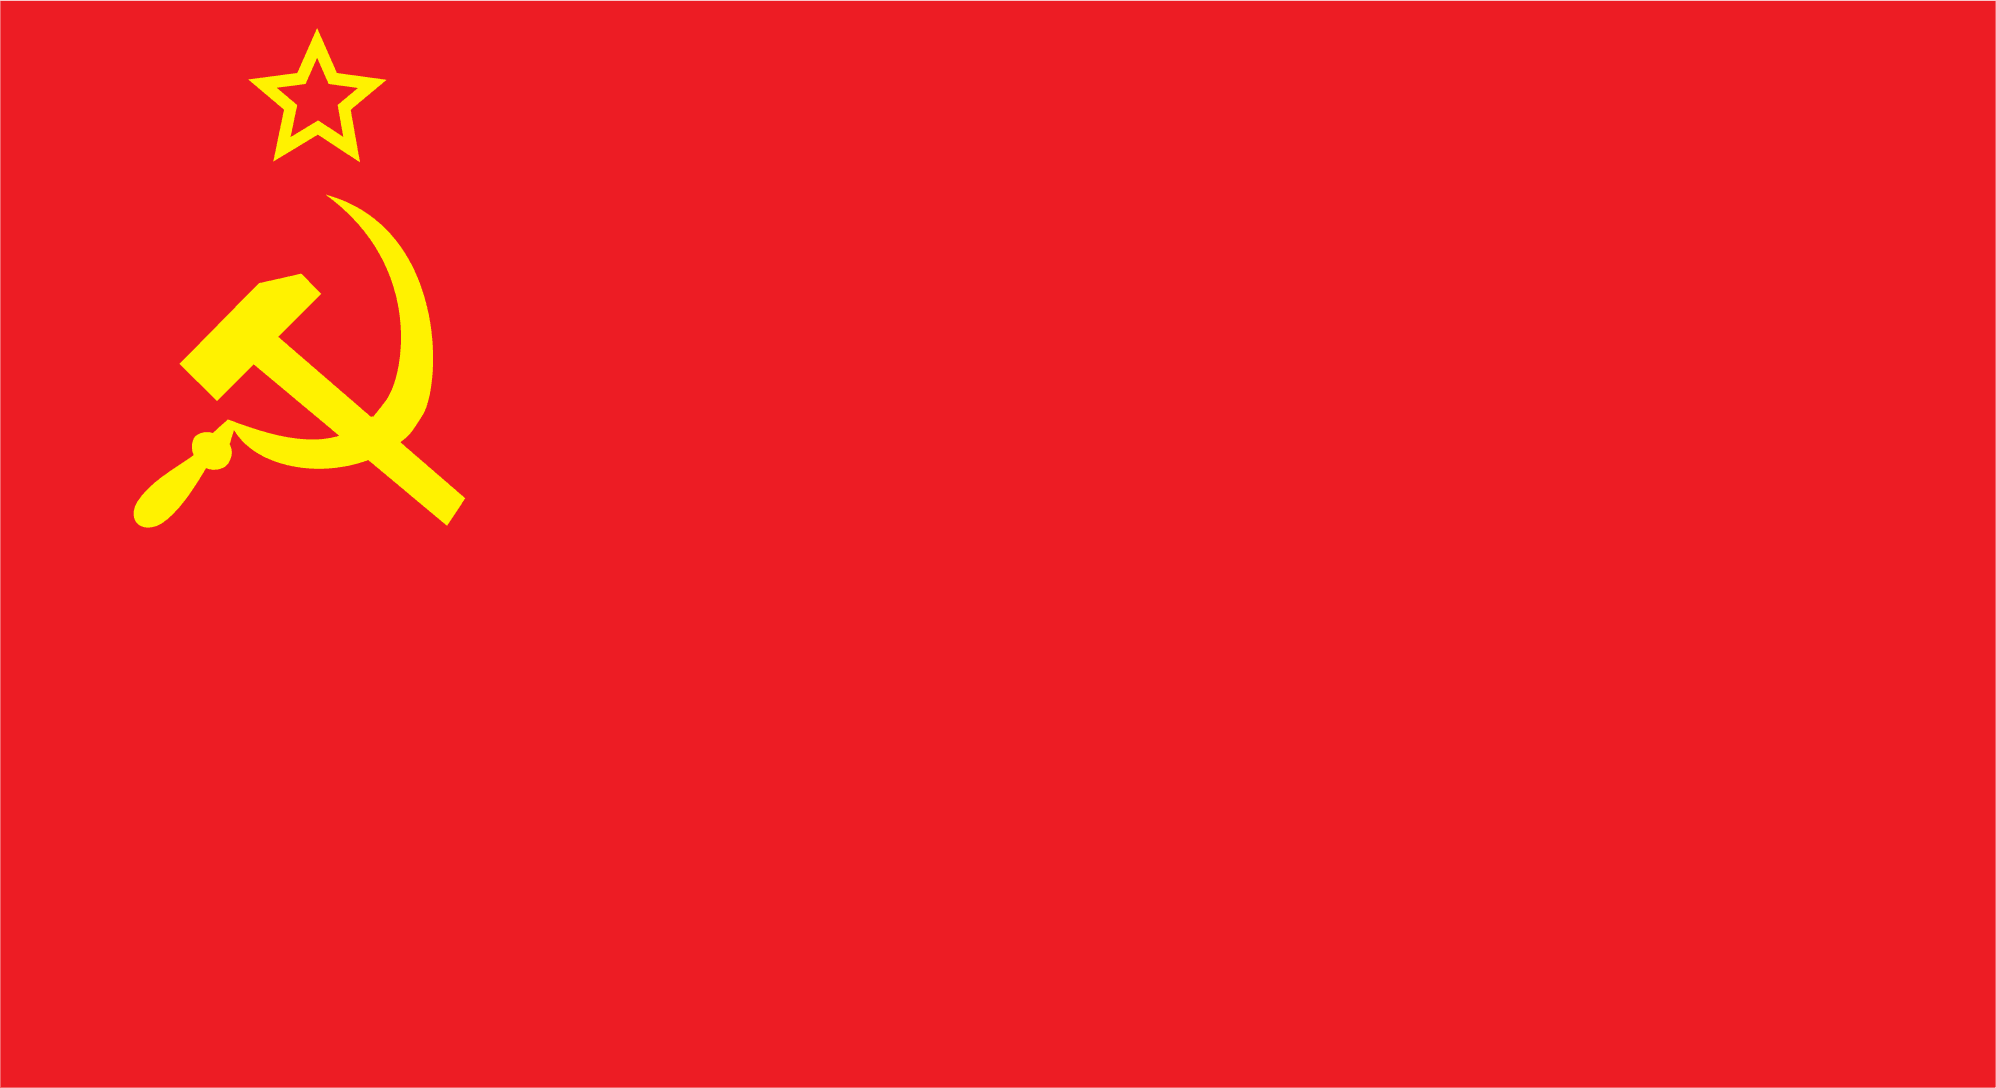 Государственный флаг СССР.